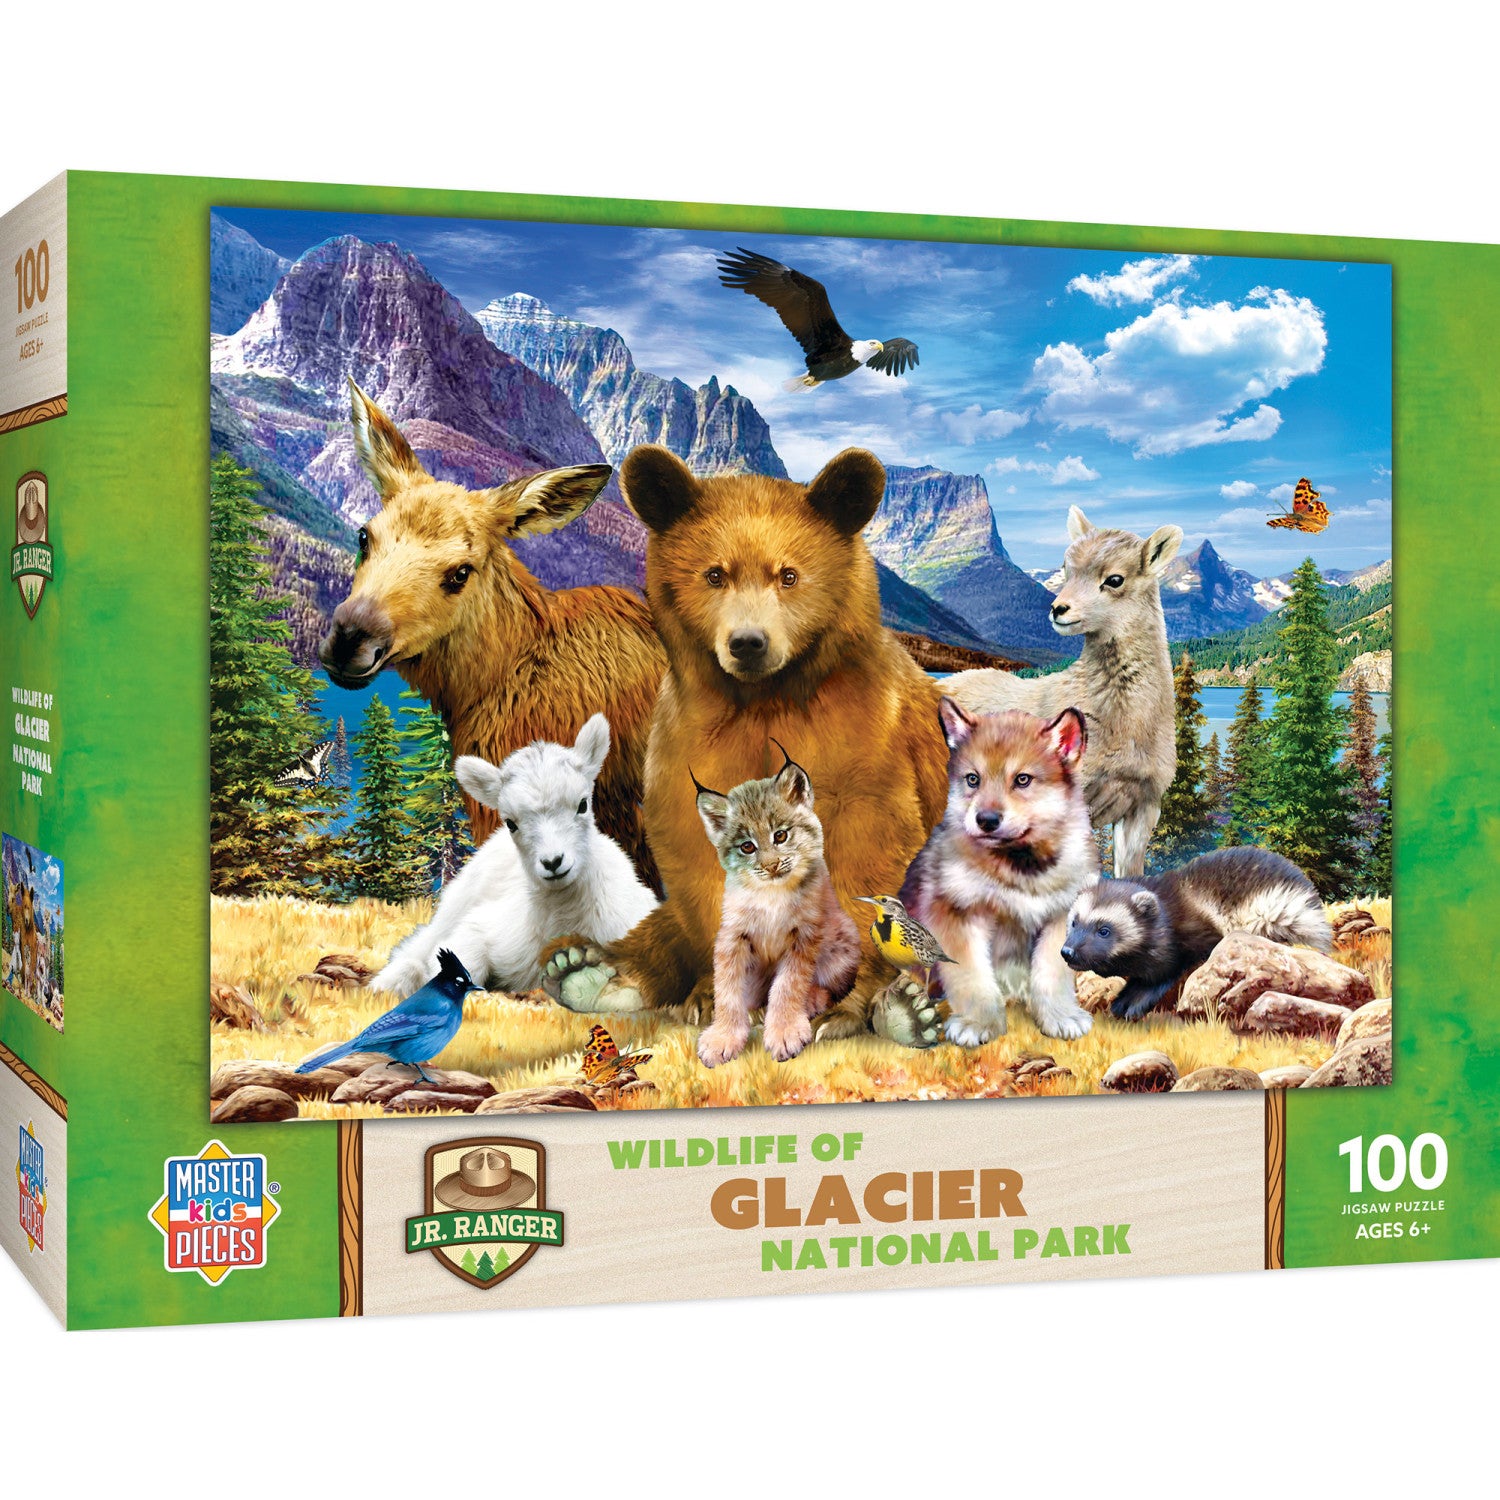 Wildlife of Glacier National Park - 100 Piece Jigsaw Puzzle